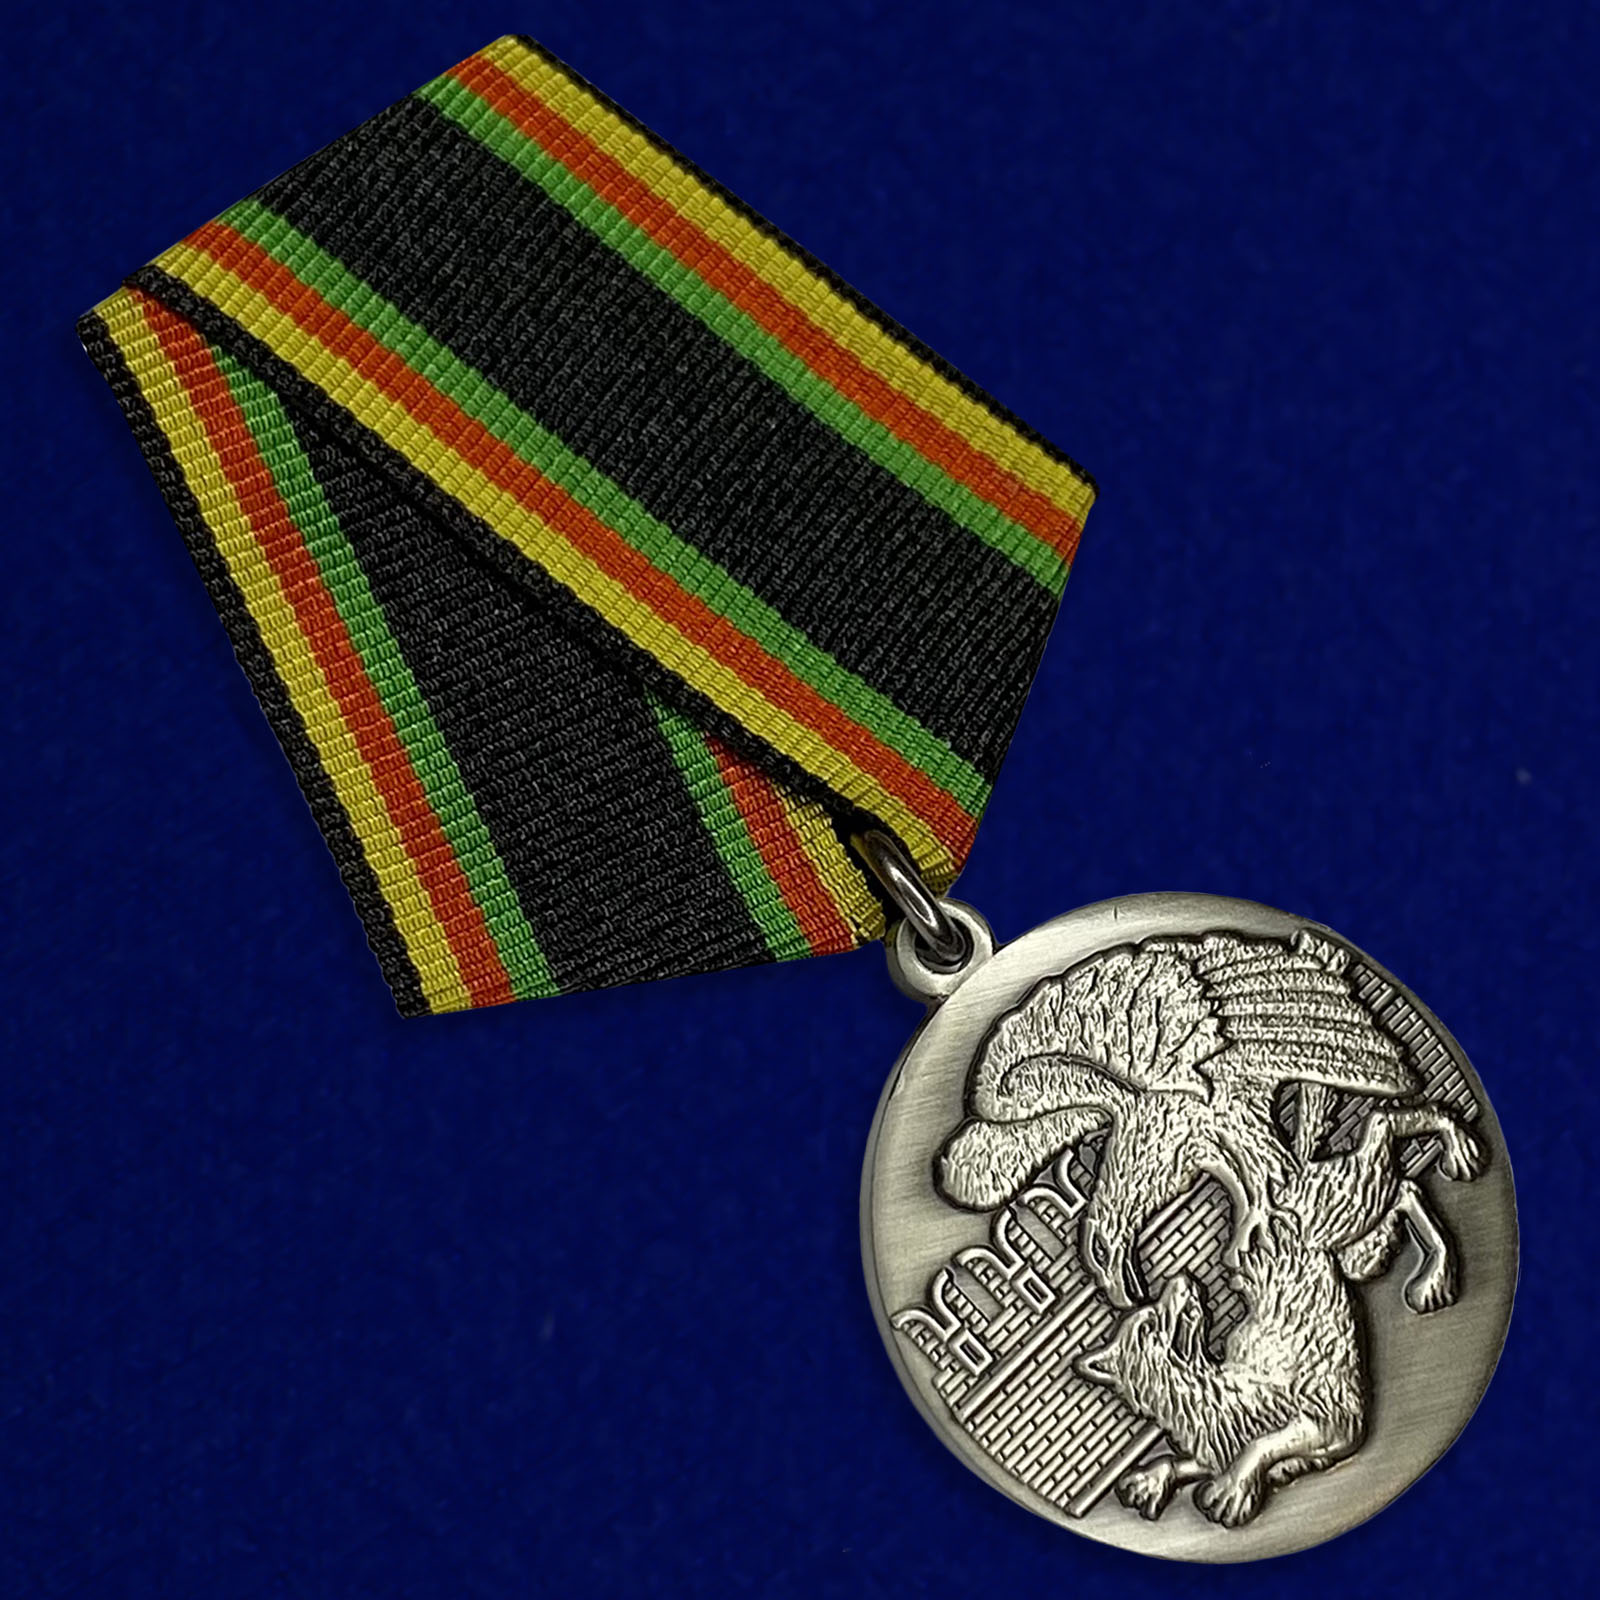 Медаль «Защитнику Отечества»